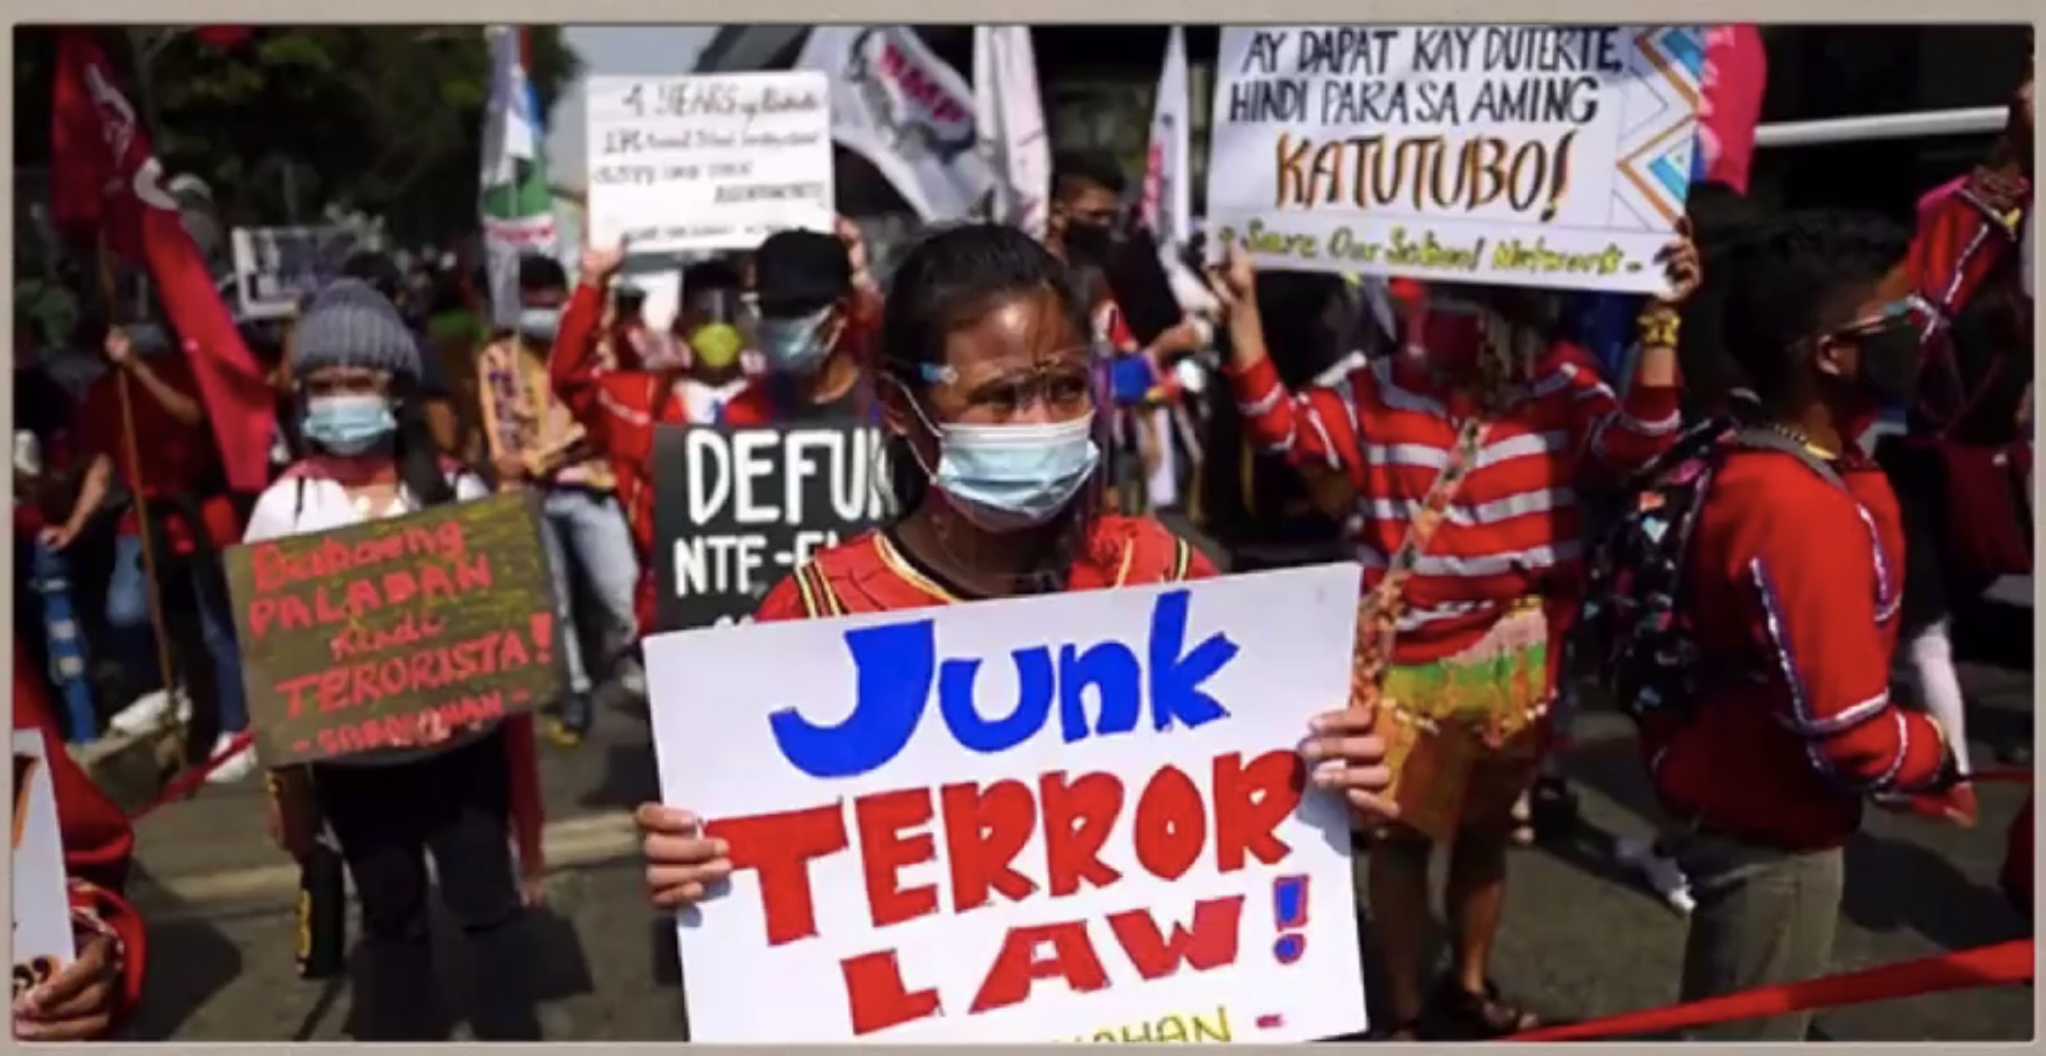 Criminalización contra pueblos indígenas se intensificó durante pandemia, denuncian organizaciones